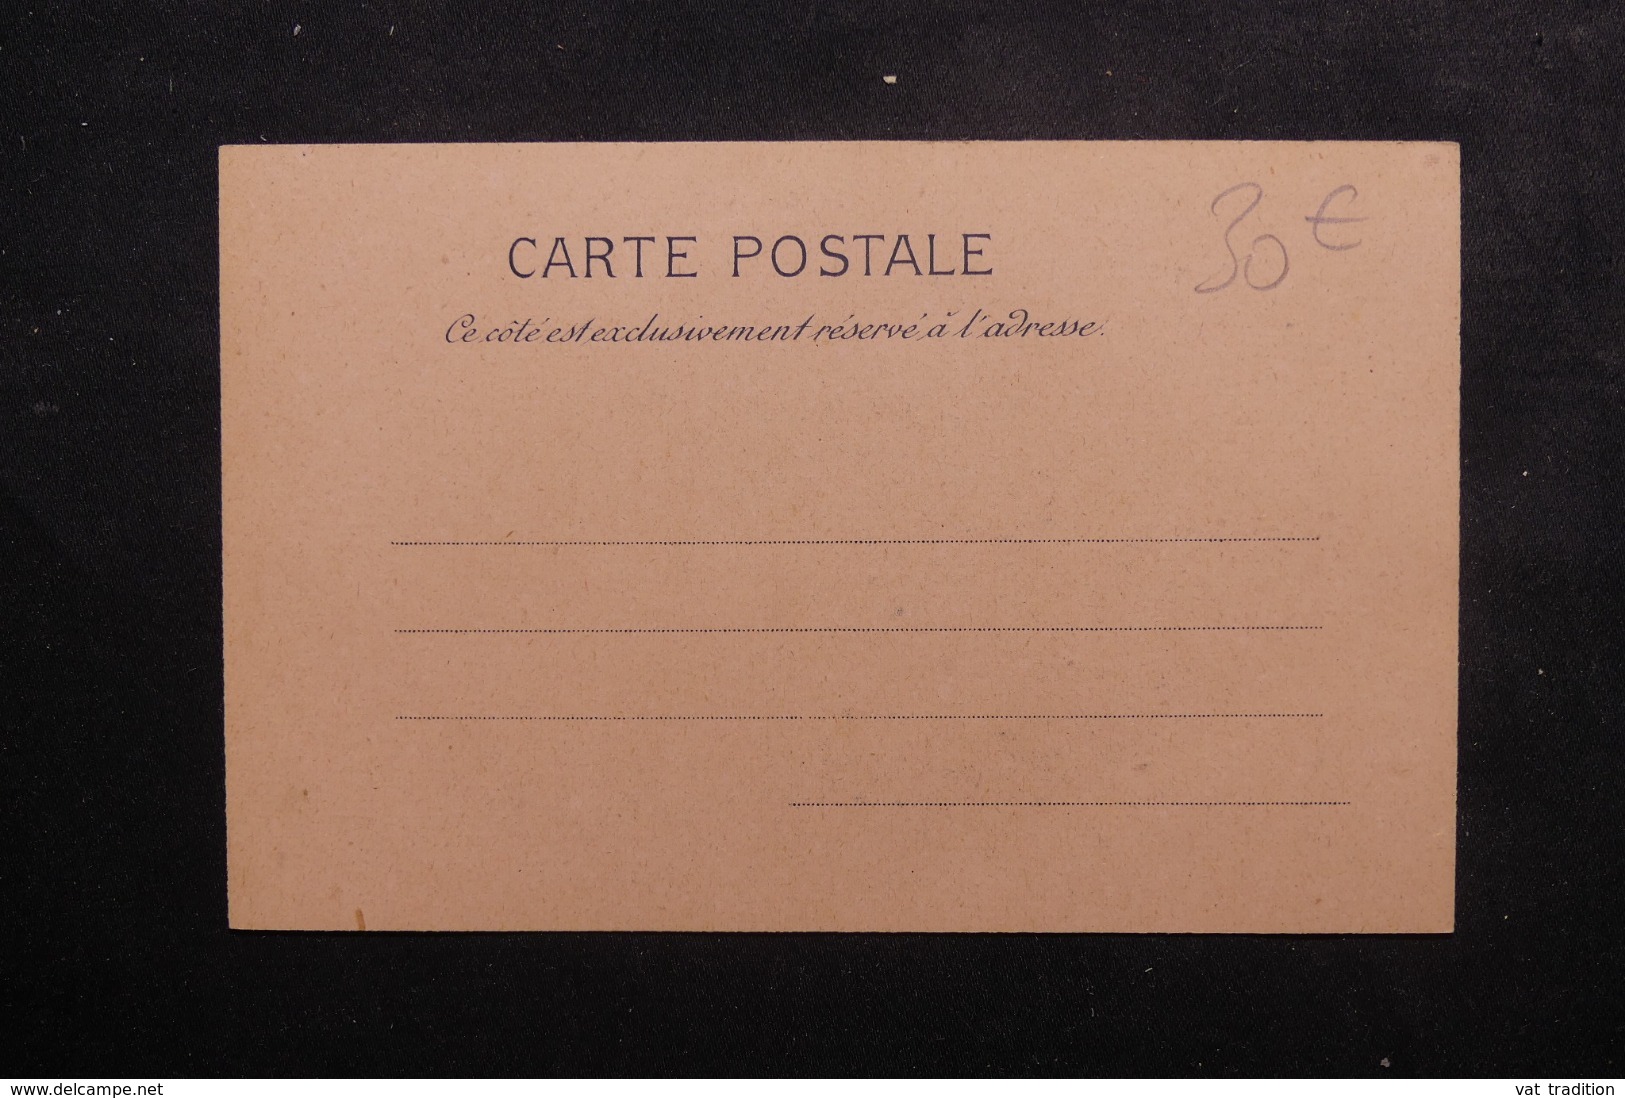 ÉVÉNEMENTS - Carte Postale De La Visite Du Tsar De Russie à Reims En 1901 - L 46461 - Receptions